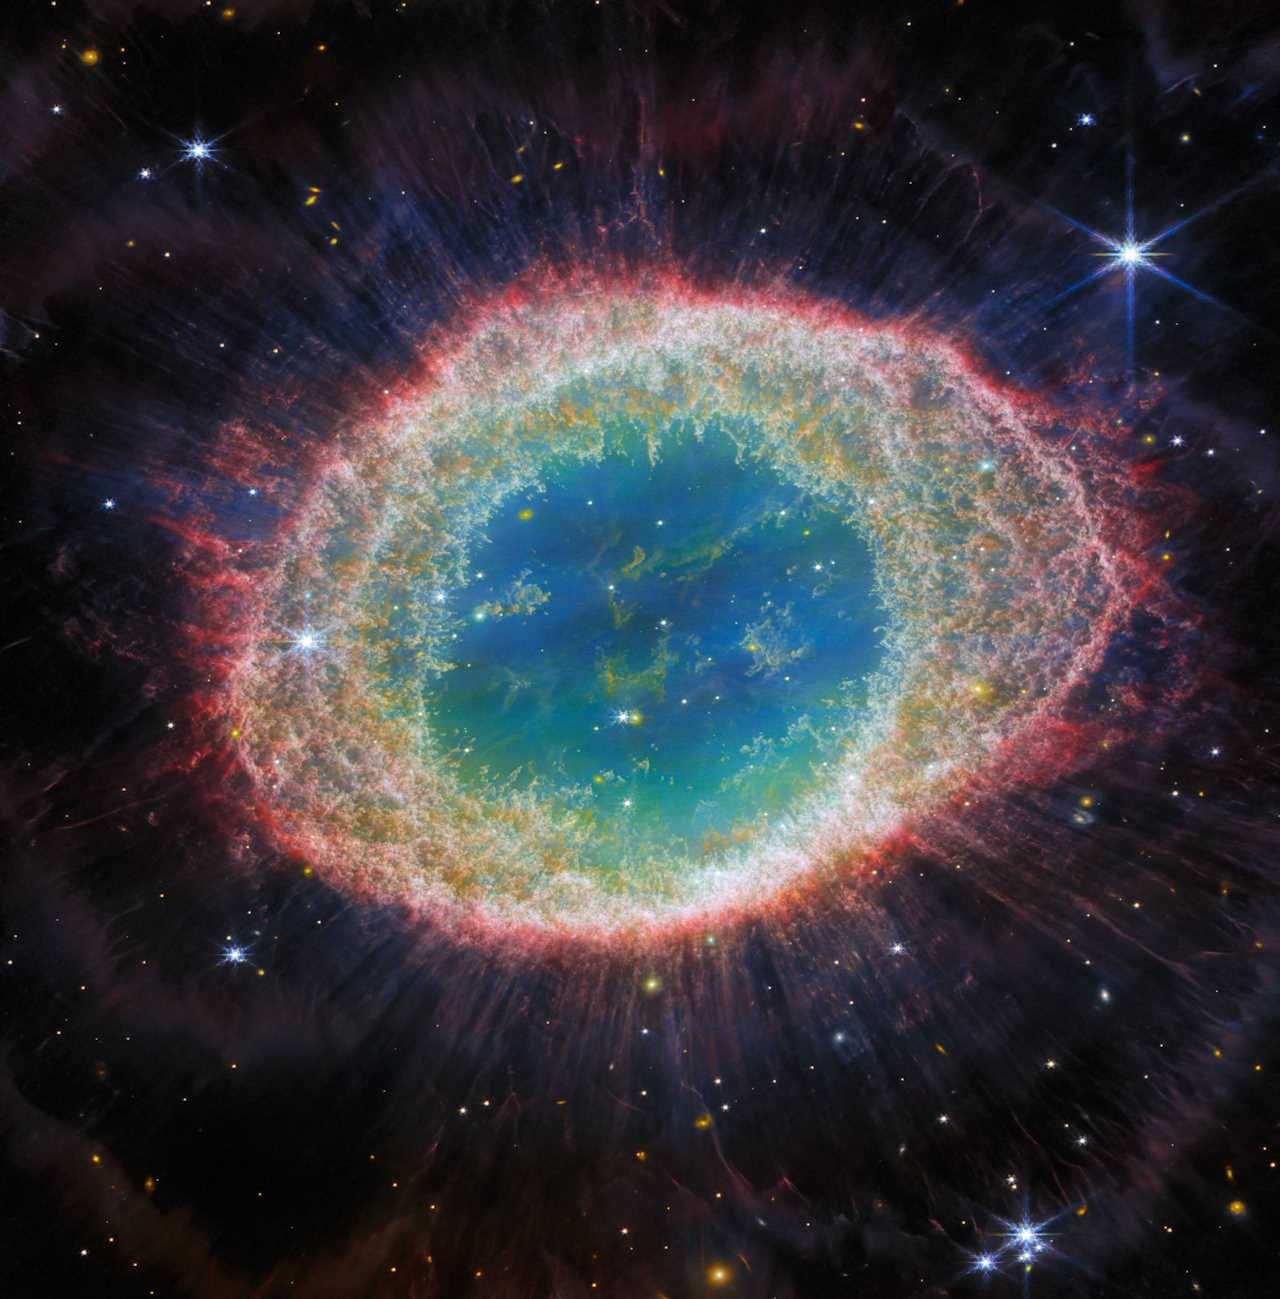 Ближньоінфрачервона камера JWST захопила Кільцеву туманність з безпрецедентною деталізацією. Цей астрономічний об'єкт у формі пончика, утворений зіркою, що викидає свої зовнішні шари, коли в неї закінчується паливо, знаходиться приблизно за 770 парсеків (2500 світлових років) від Землі в сузір'ї Ліри. Зображення демонструє складні деталі структури кілець туманності (пофарбовані рожевим і помаранчевим кольорами), які складаються з гарячих газів.